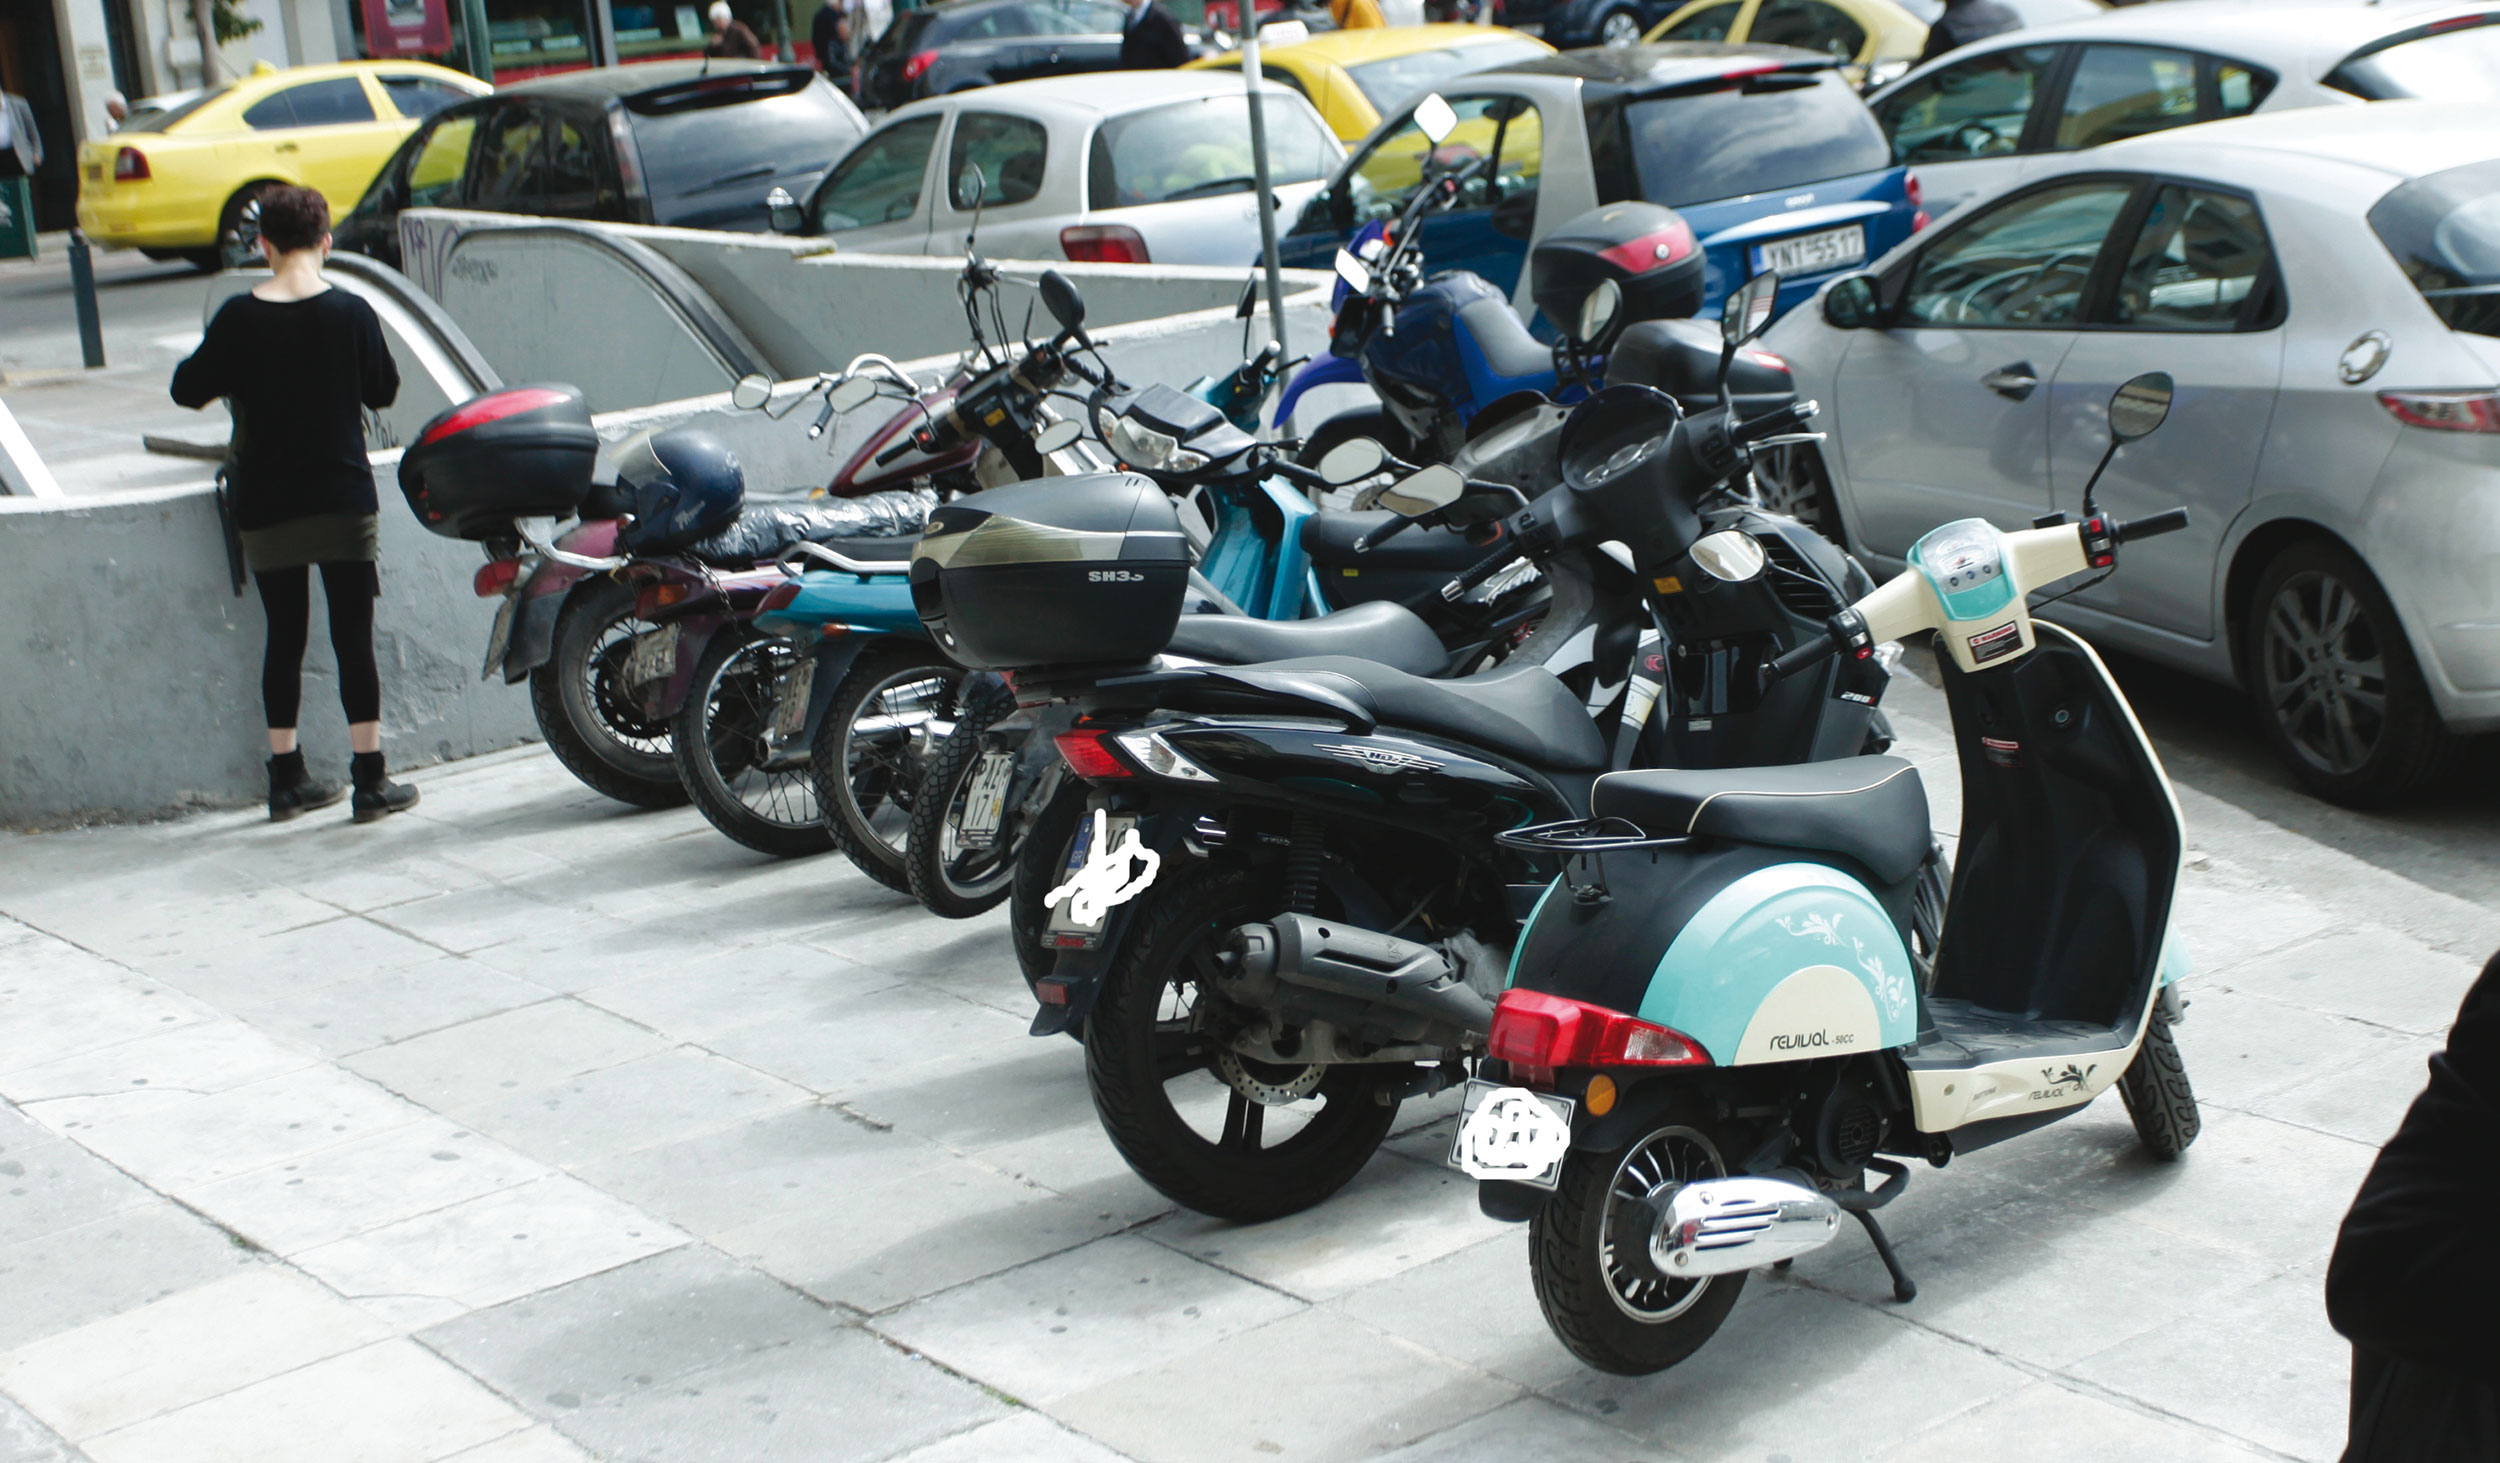 Δεν έχει ξαναγίνει: Ο Δήμος Αθηναίων έχασε 276 μοτοσικλέτες του! Είχαν πληρωθεί με χρήματα των δημοτών!